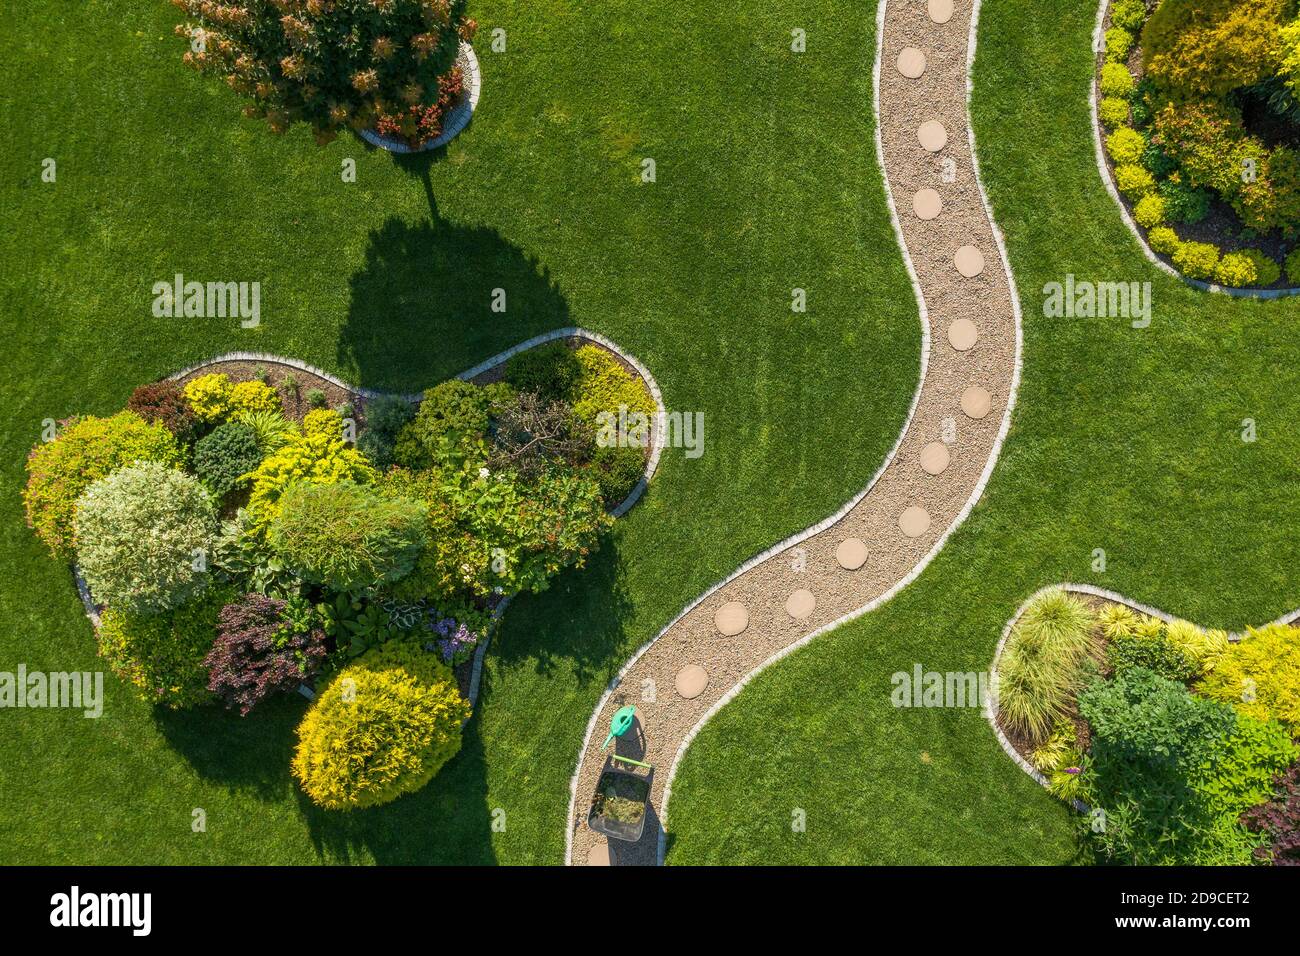 Jardin résidentiel mature avec grande pelouse vue aérienne du dessus. Thème de l'industrie du jardinage et de l'aménagement paysager. Heure d'été. Banque D'Images